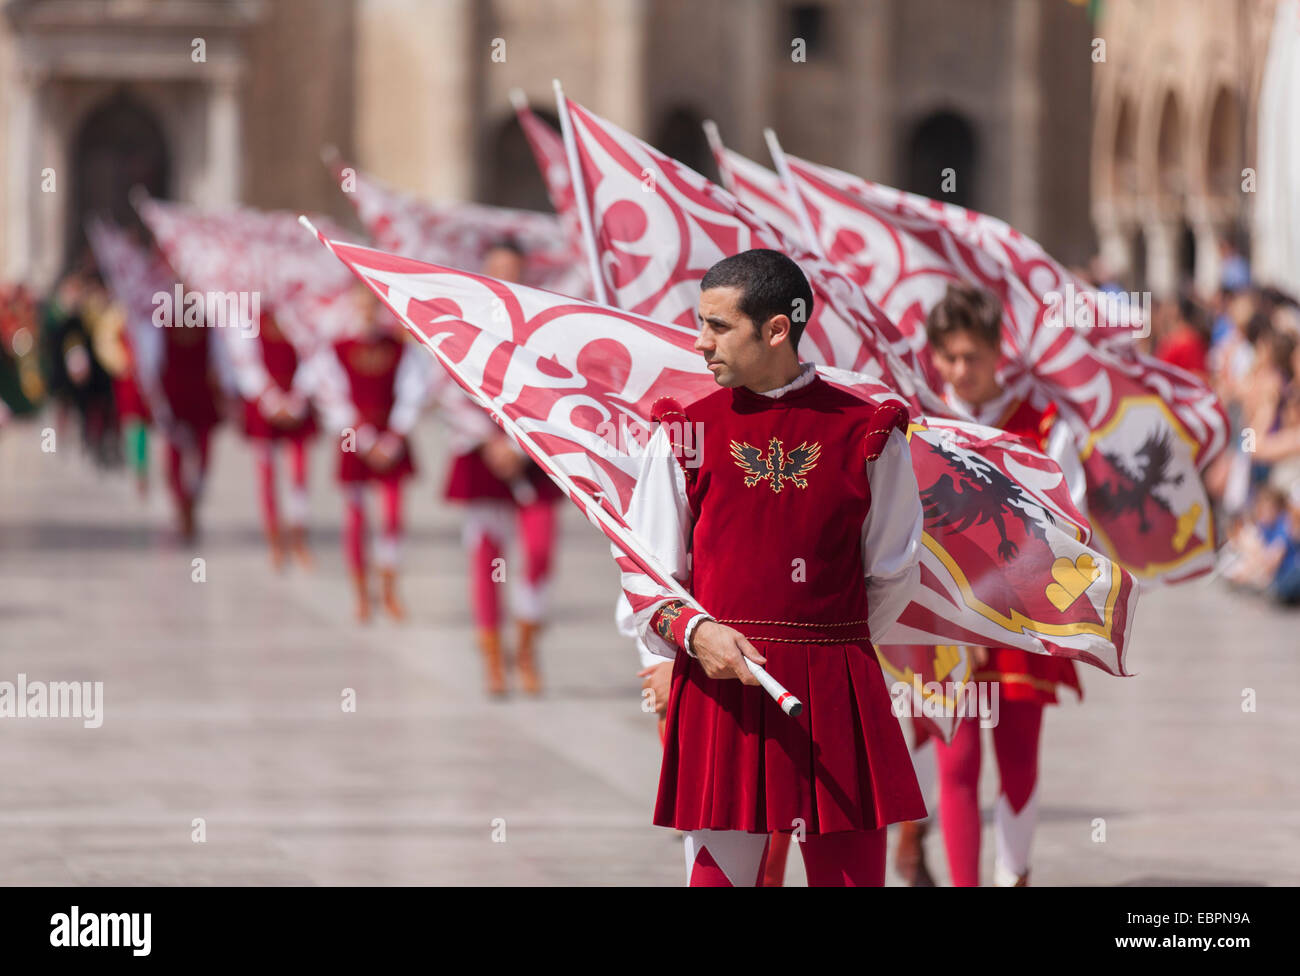 Festa Medievale di La Quintana in Piazza del Popolo, Ascoli Piceno, Le Marche, Italia, Europa Foto Stock